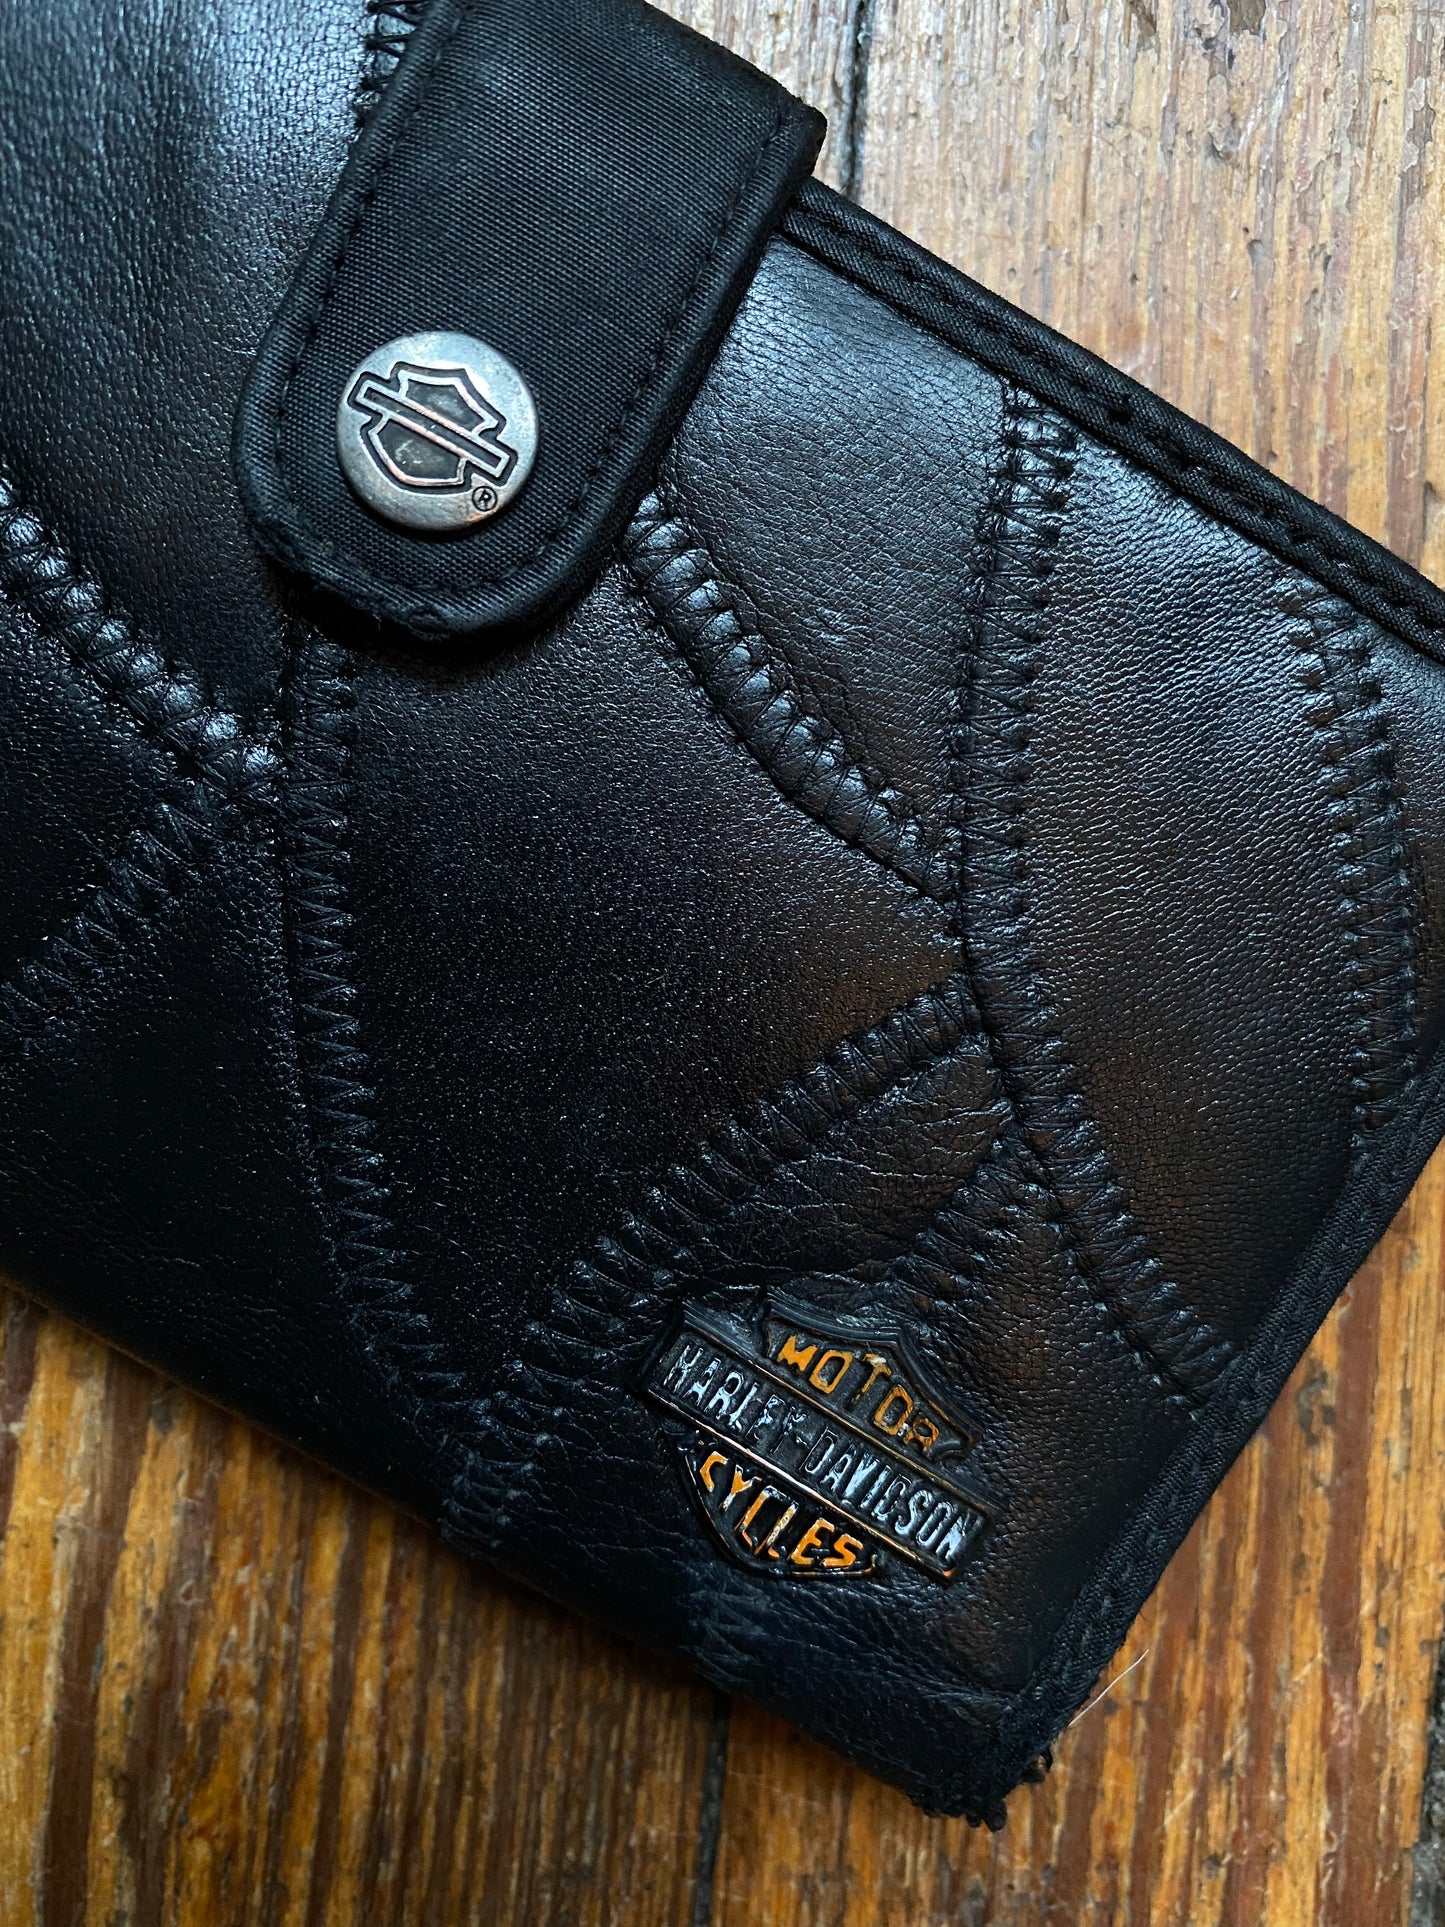 Vintage Harley Davidson Patchwork Leather Wallet